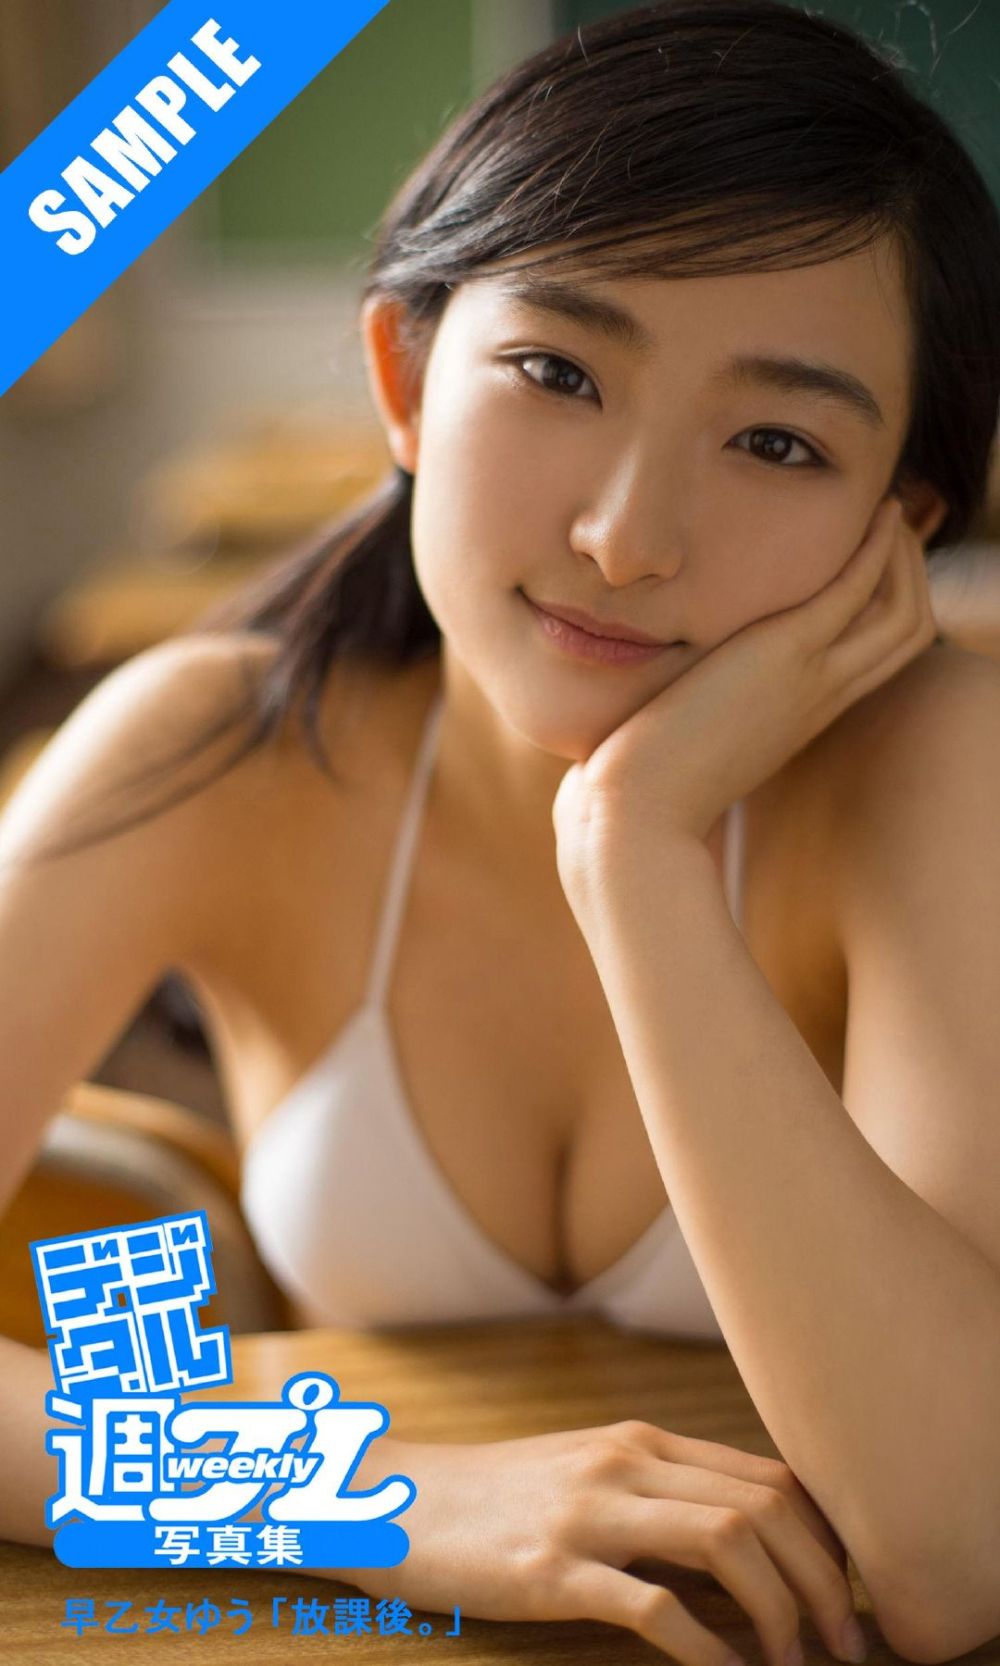 早乙女优 Sexy and Hottest Photos , Latest Pics